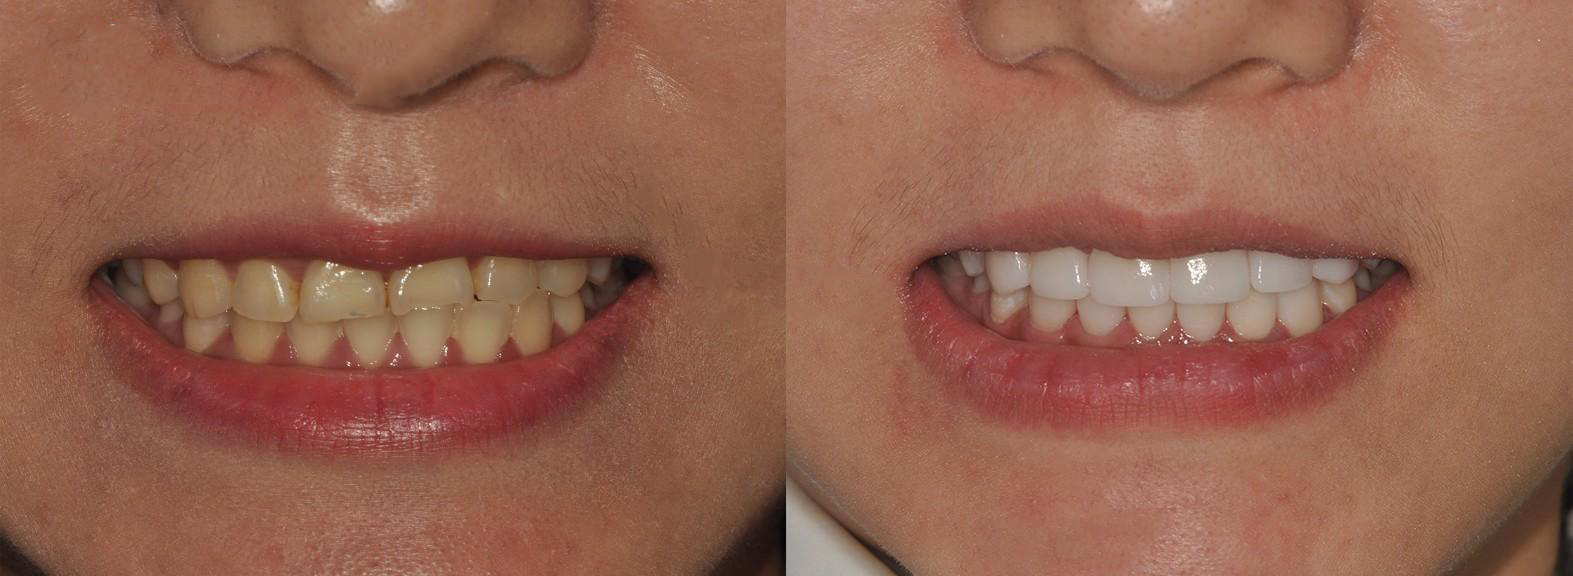 门牙残缺做全瓷牙修复有什么优点